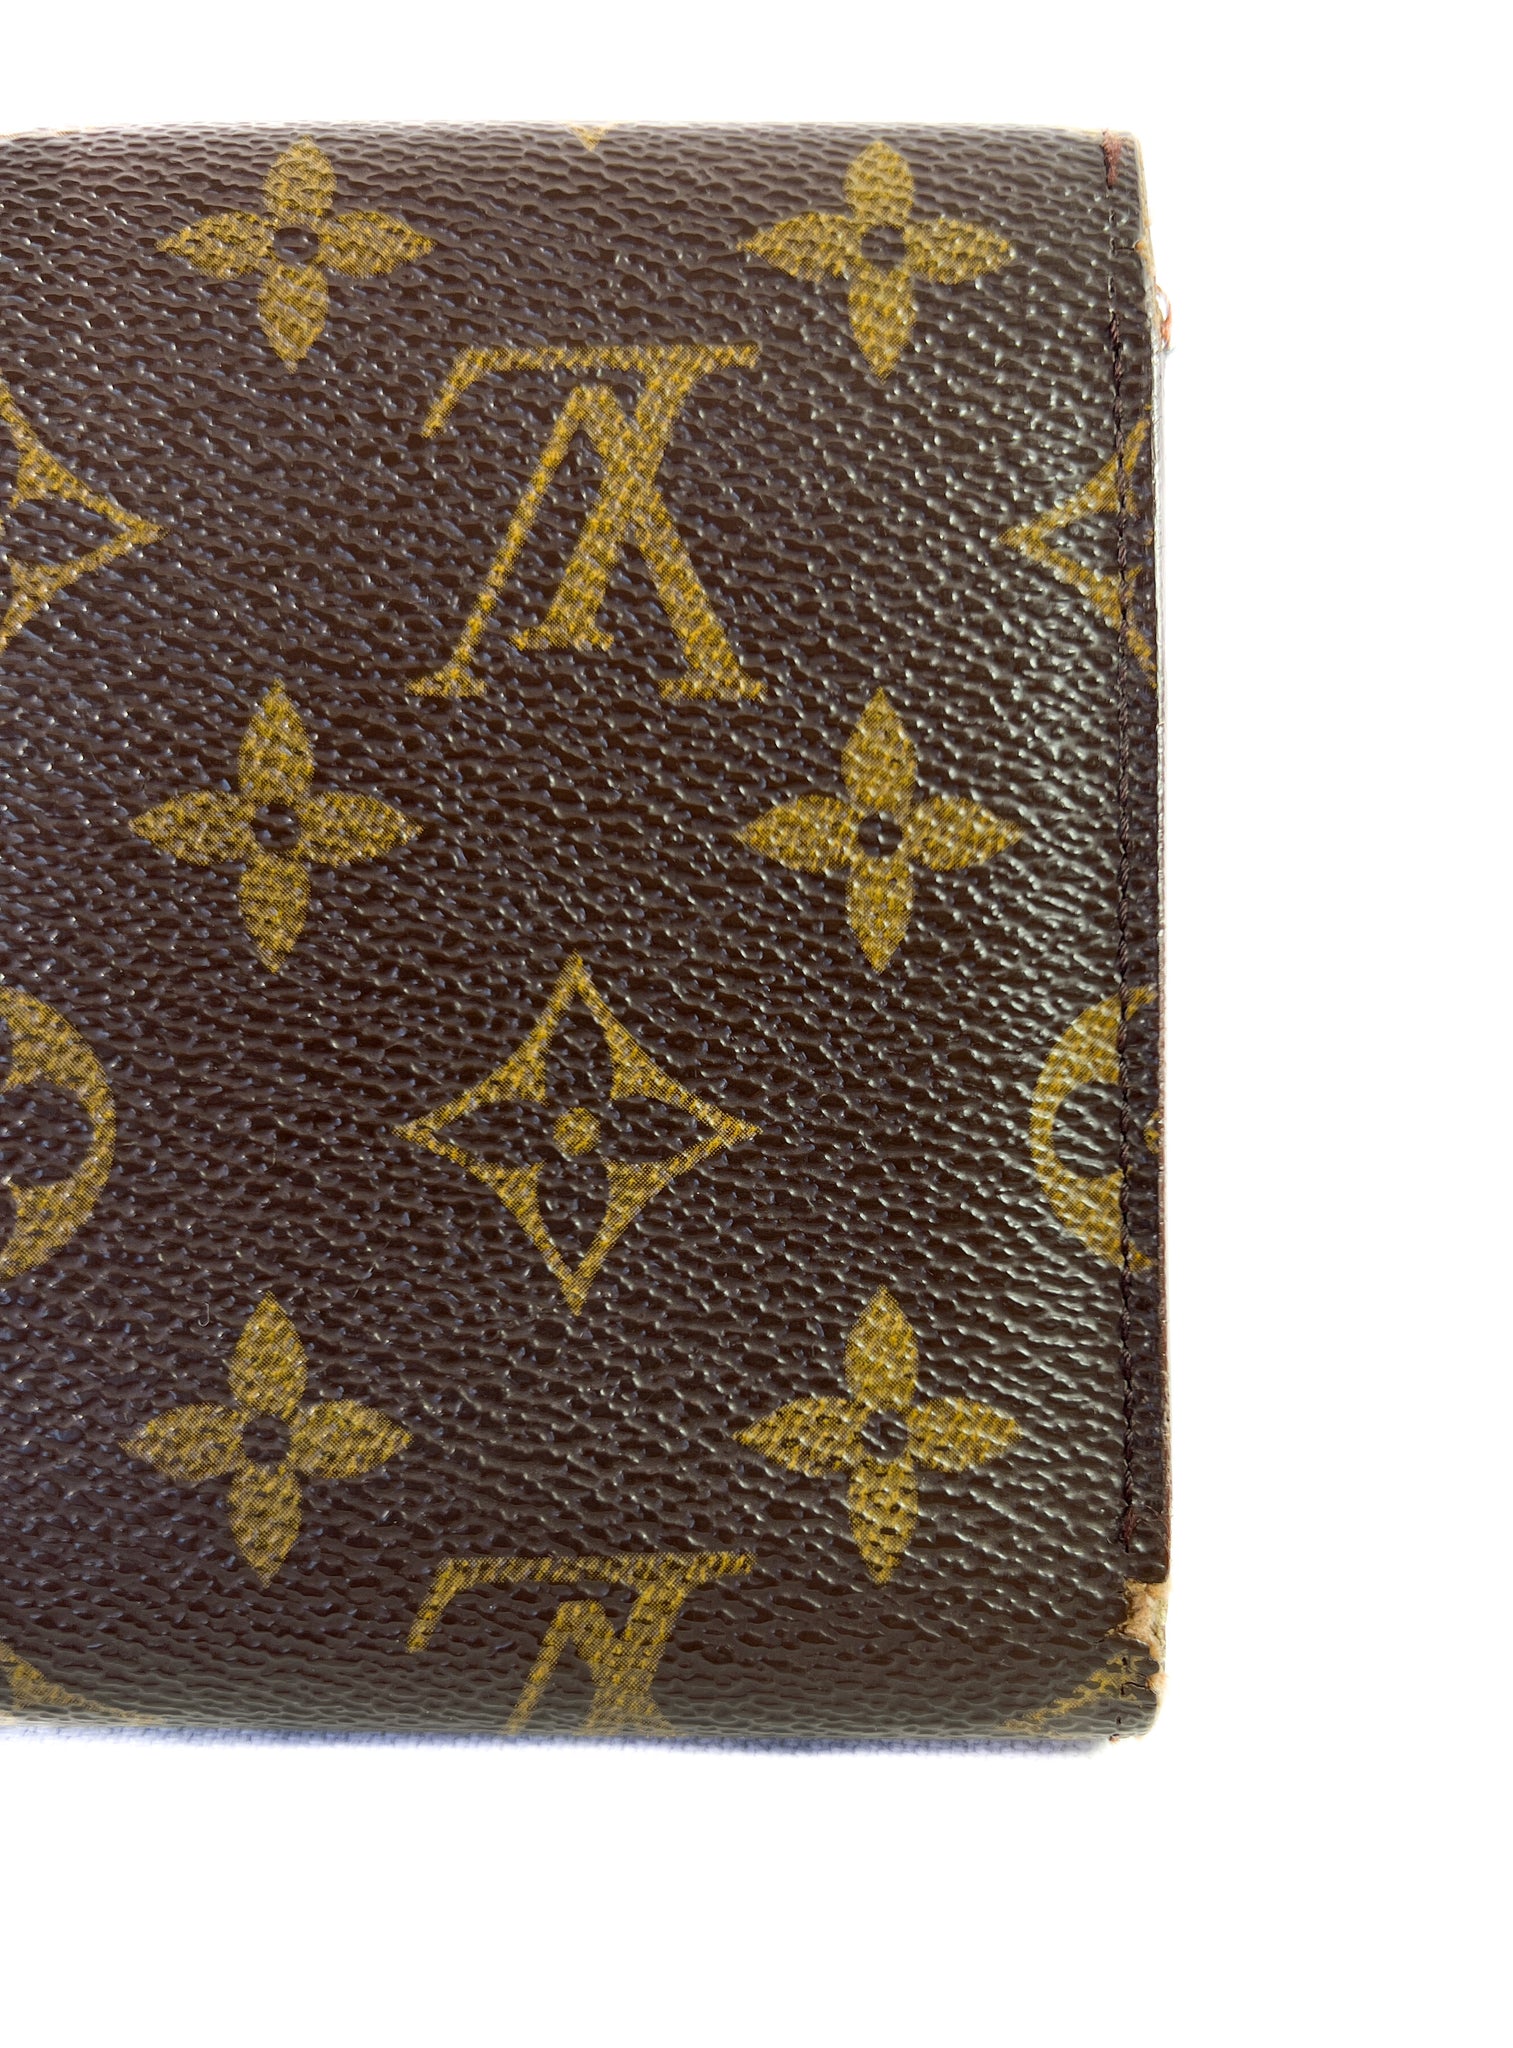 Louis Vuitton monogram vintage 1995 wallet – My Girlfriend's Wardrobe LLC